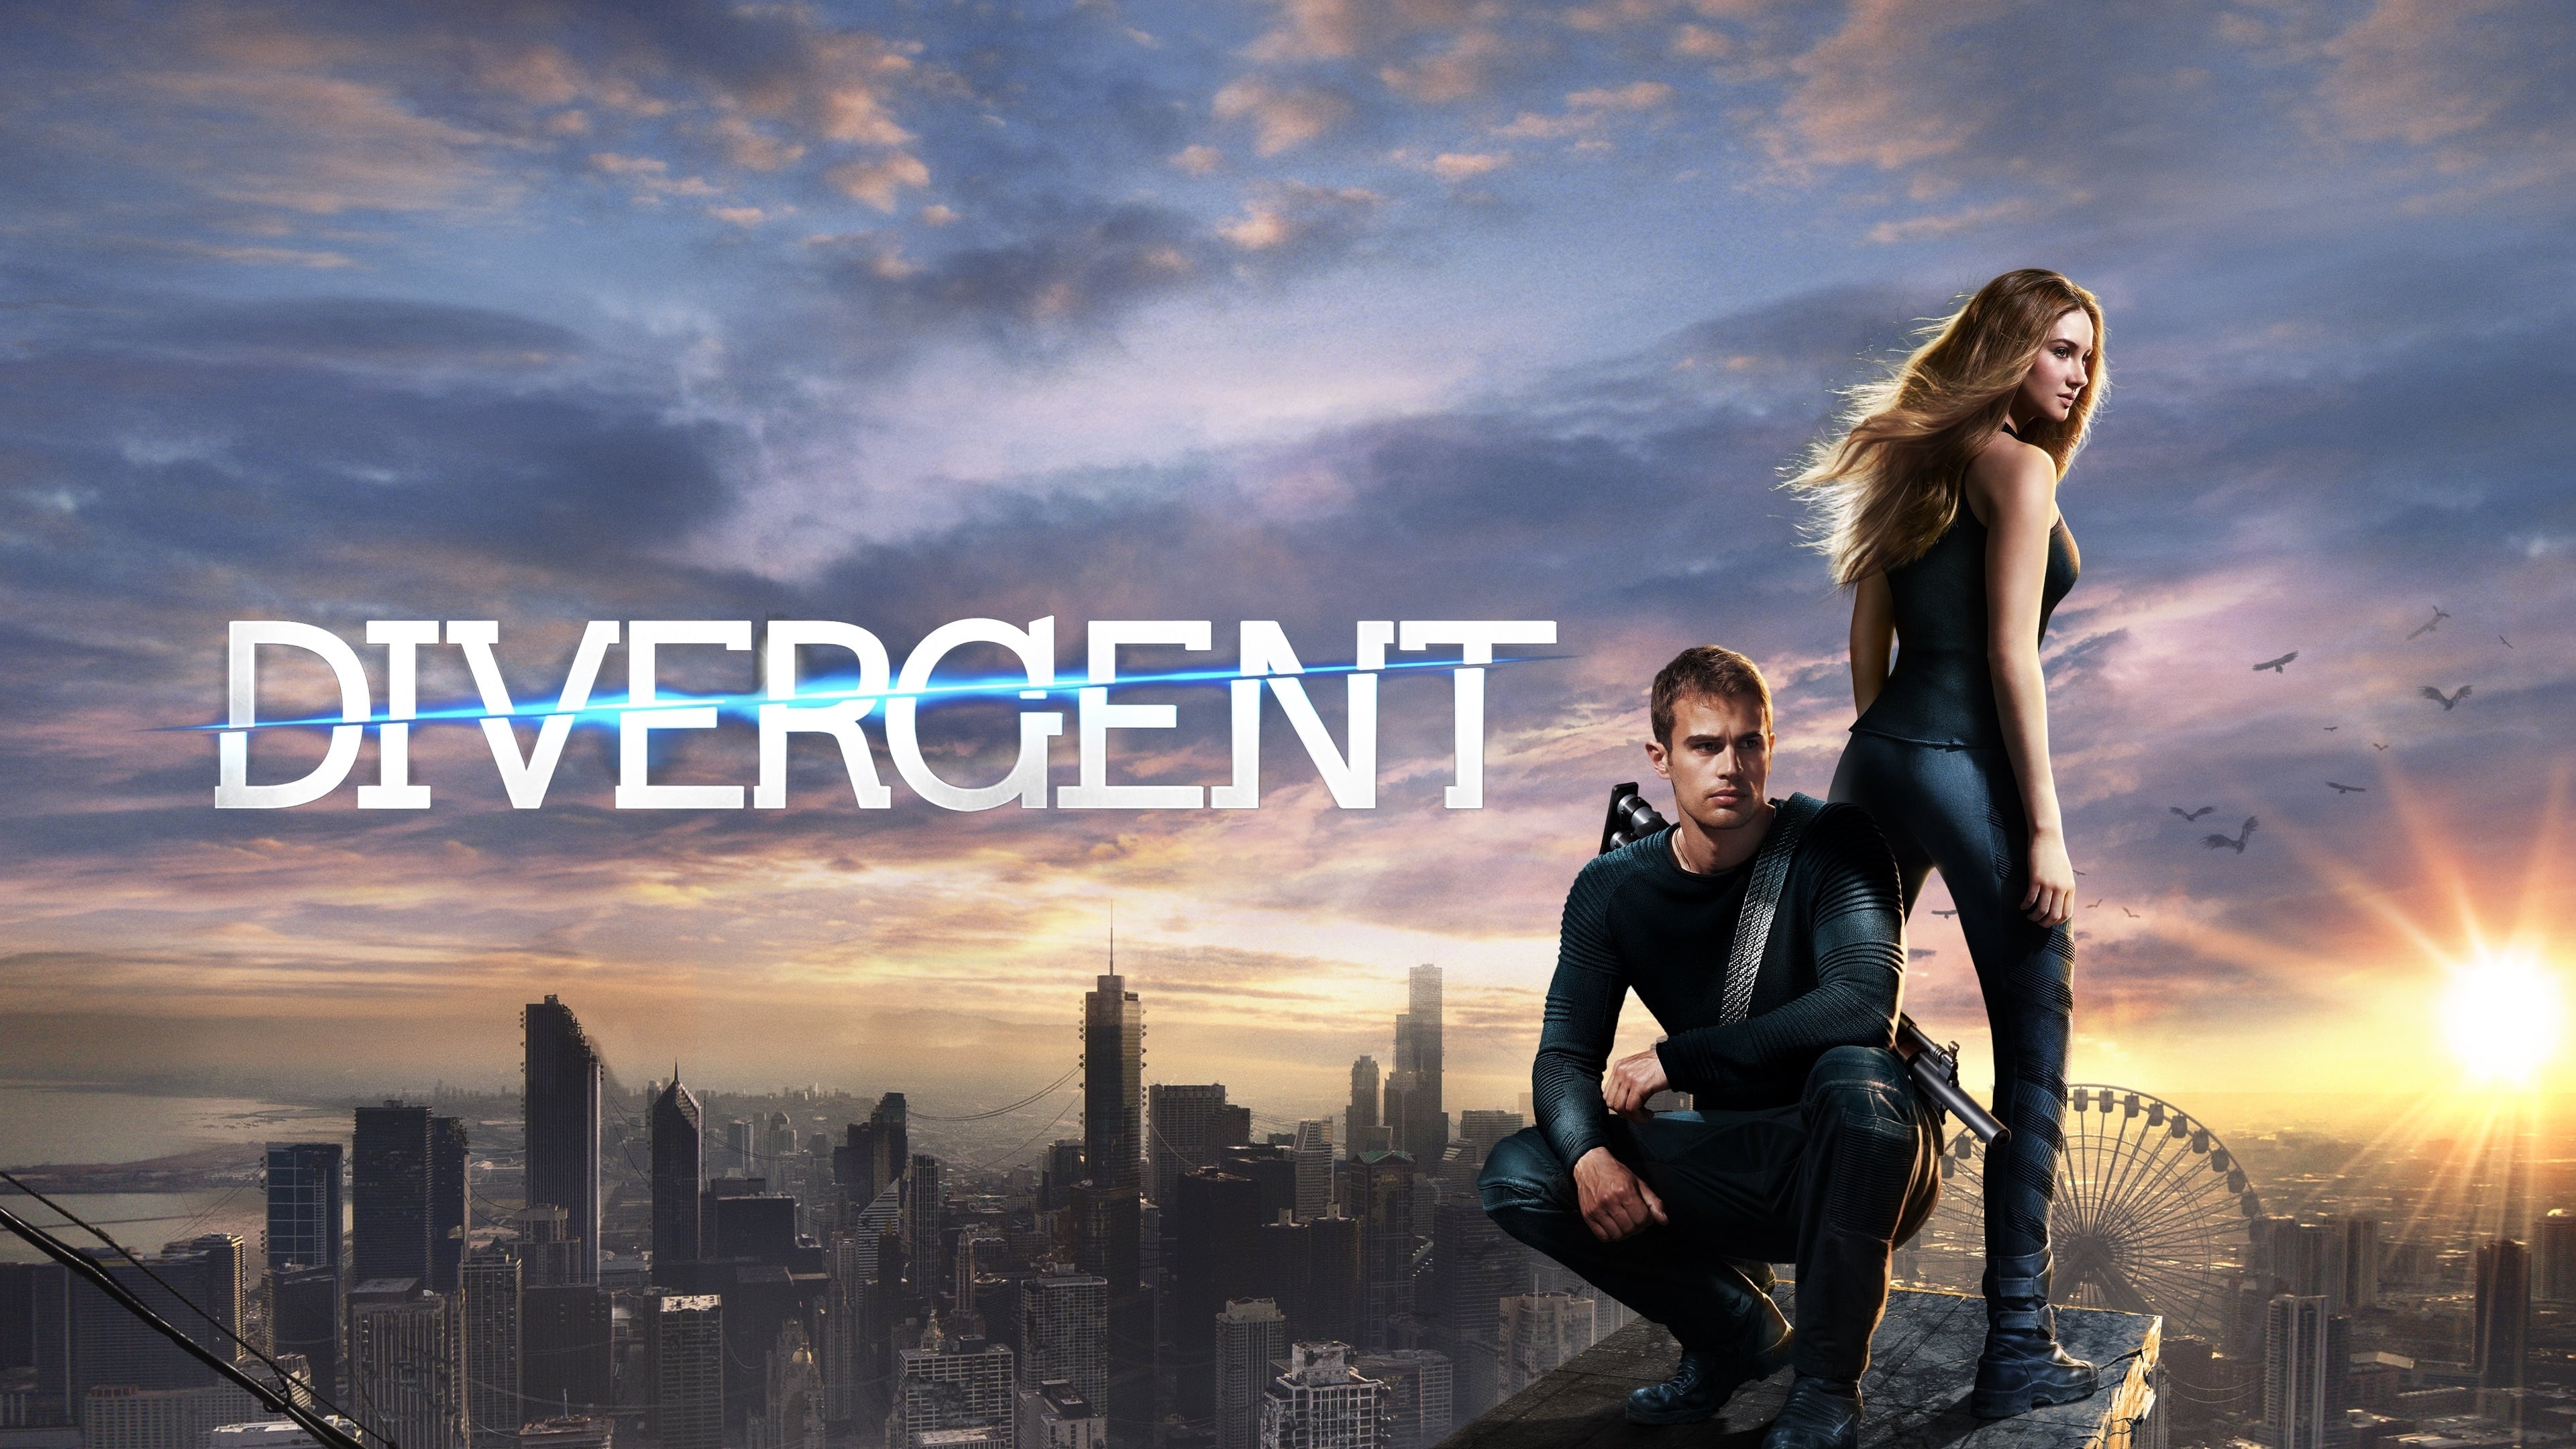 Die Bestimmung - Divergent (2014)